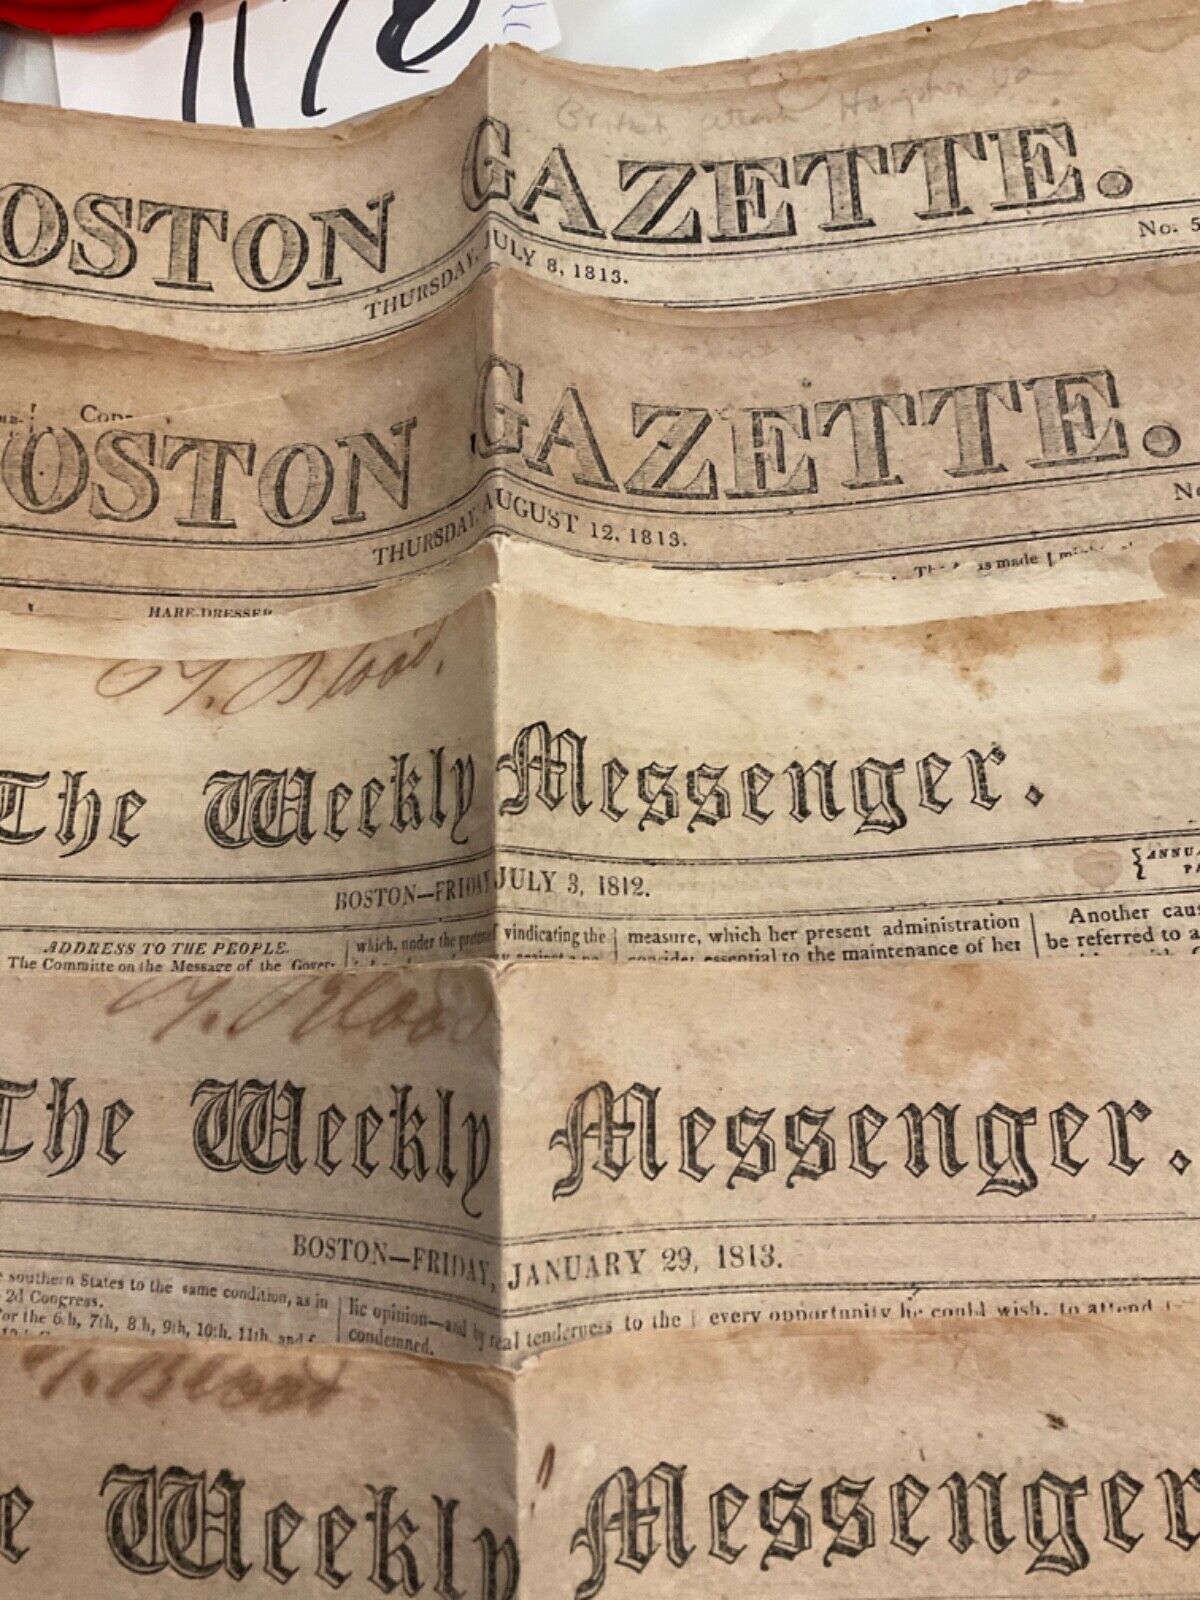 1178 WAR OF 1812 NEWSPAPERS 7 BOSTON BATTLES INDIAN BRITISH FT MADISON BLOCKADE